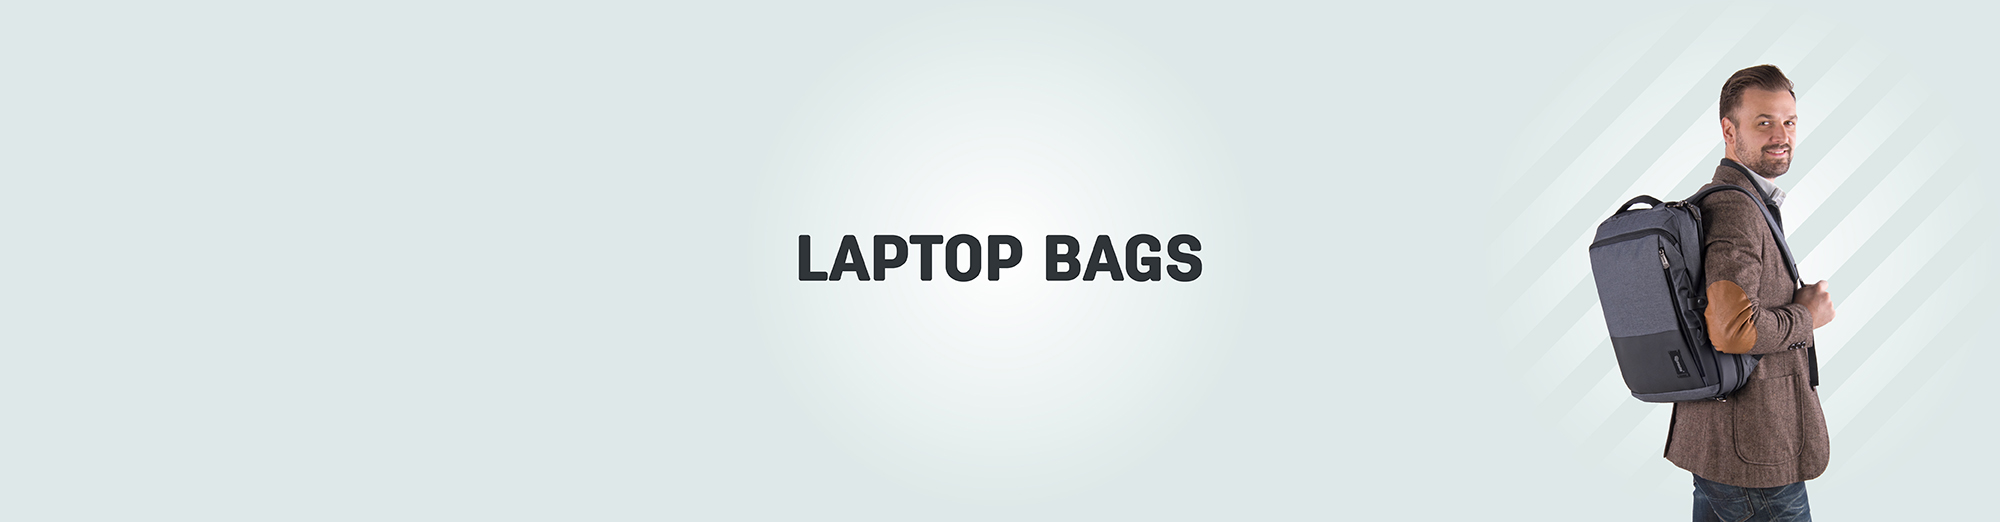 Torbe za laptop